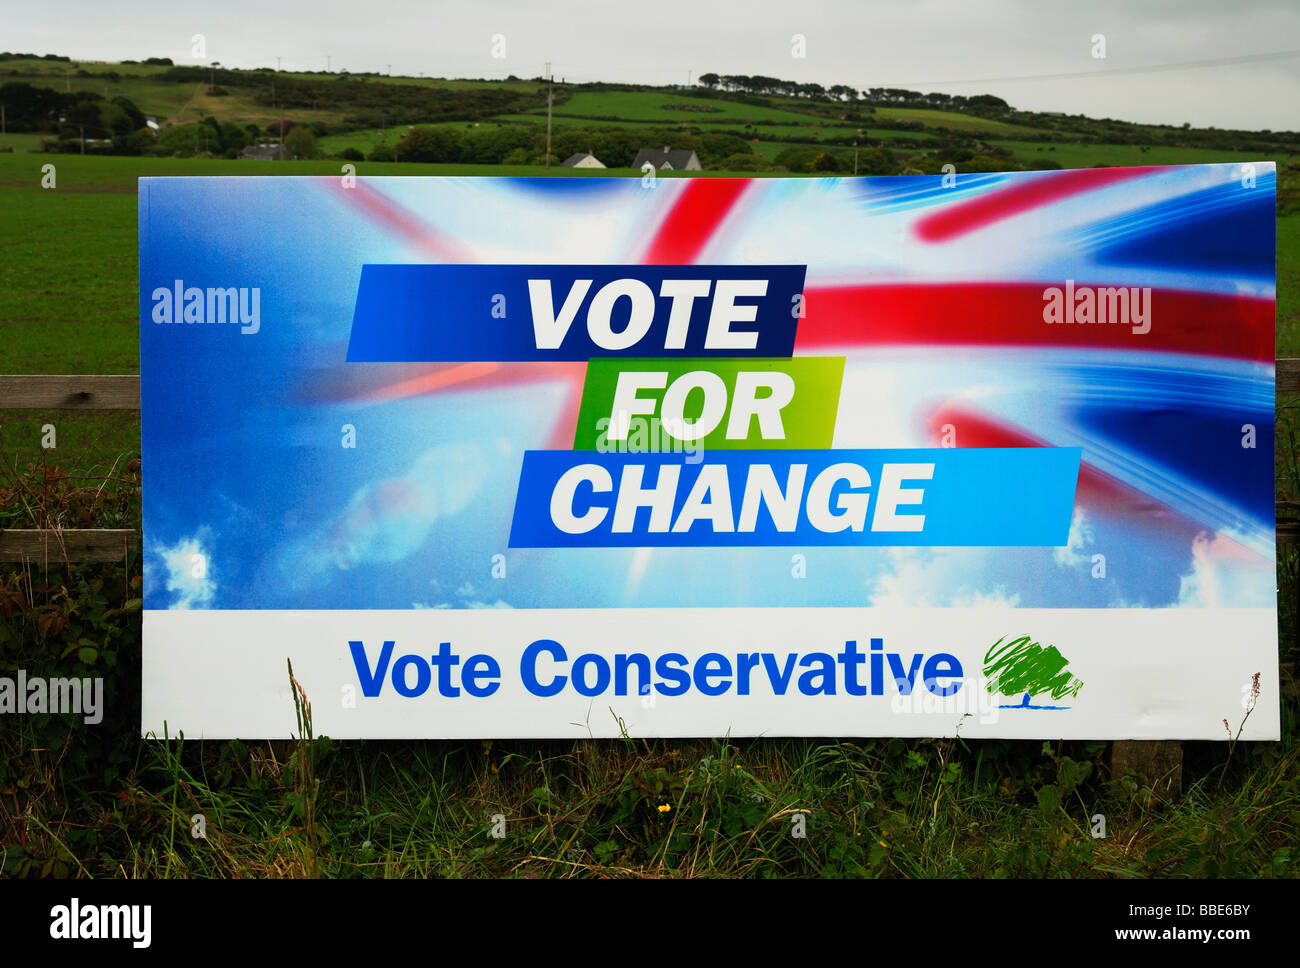 Un cartel publicitario del partido conservador en la zona rural de Cornwall, UK Foto de stock